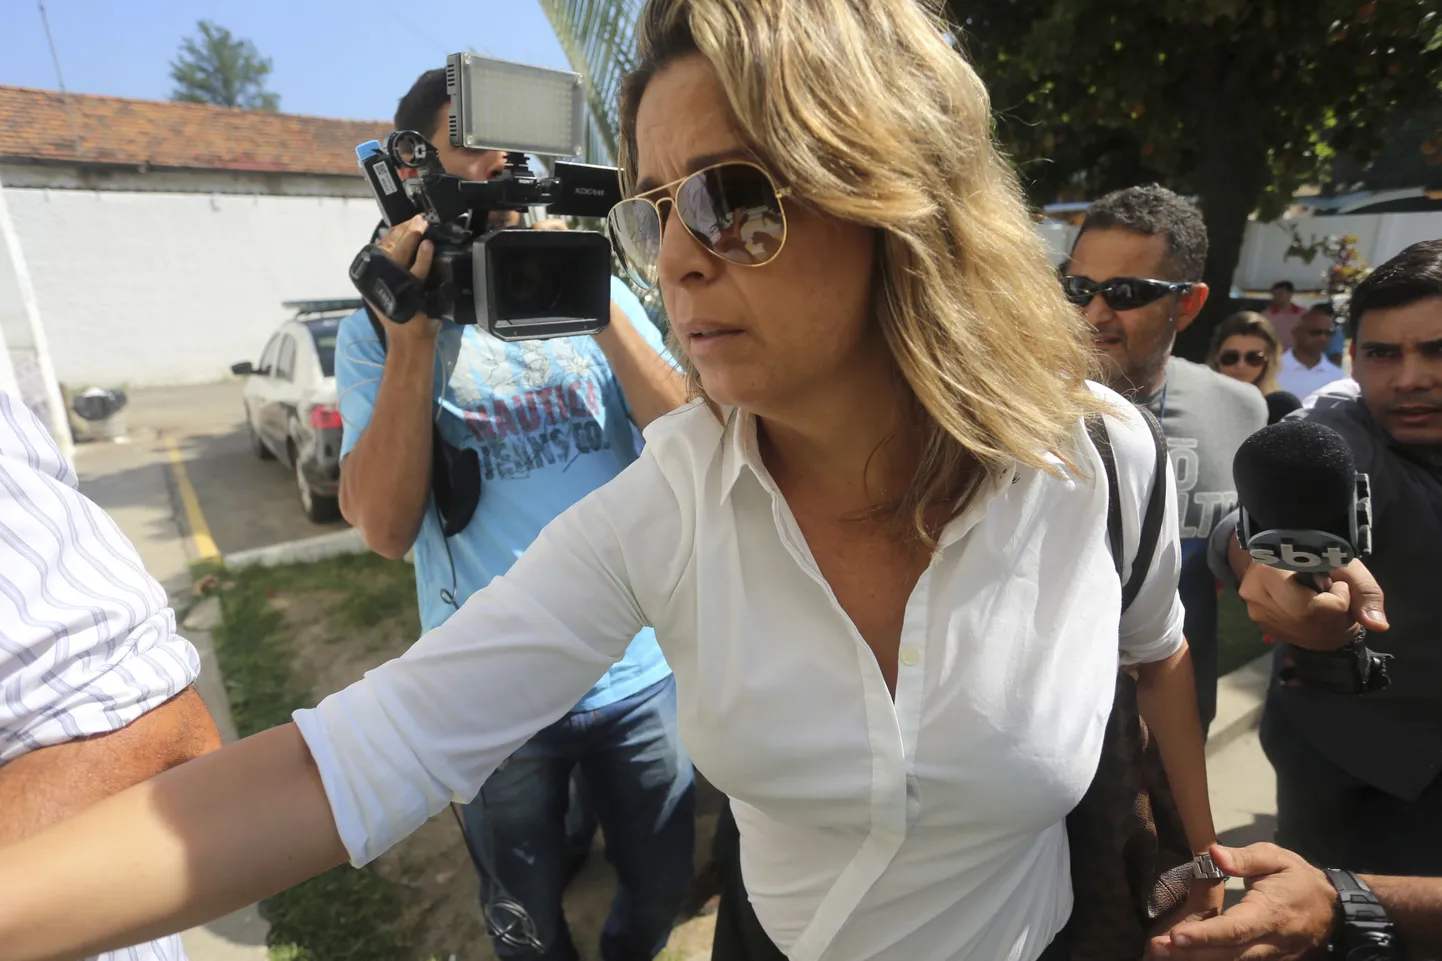 Kreeka saadiku Kyriakos Amiridise abikaasa Francoise Amiridis täna teel politseisse ülekuulamisele.